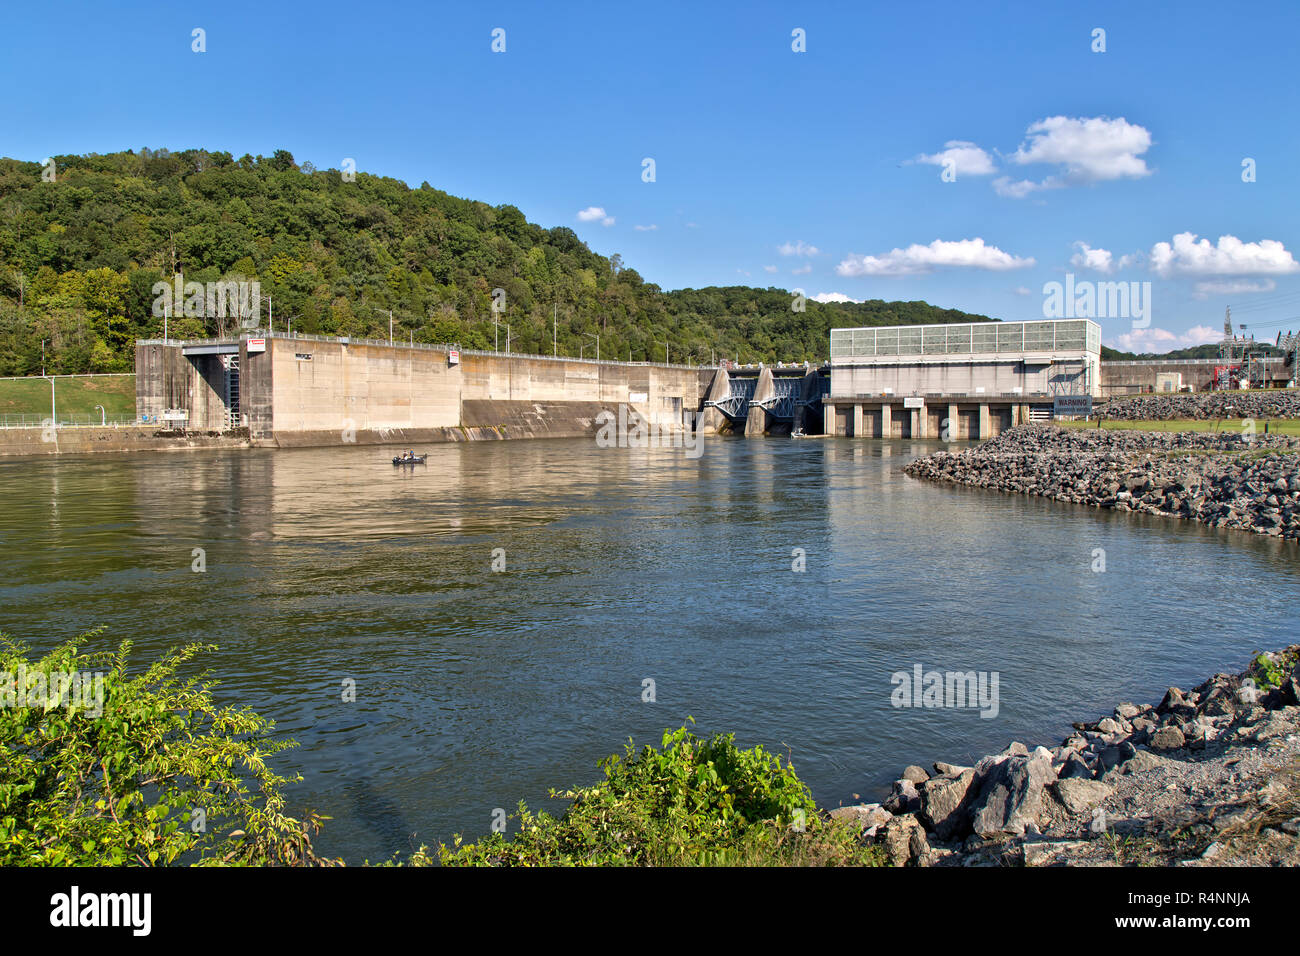 Diga idroelettrica e centrale elettrica di Melton Hill. L'area ricreativa di Melton Hill, il corpo degli ingegneri dell'esercito degli Stati Uniti, è un bacino idrico a run-of-River. Foto Stock